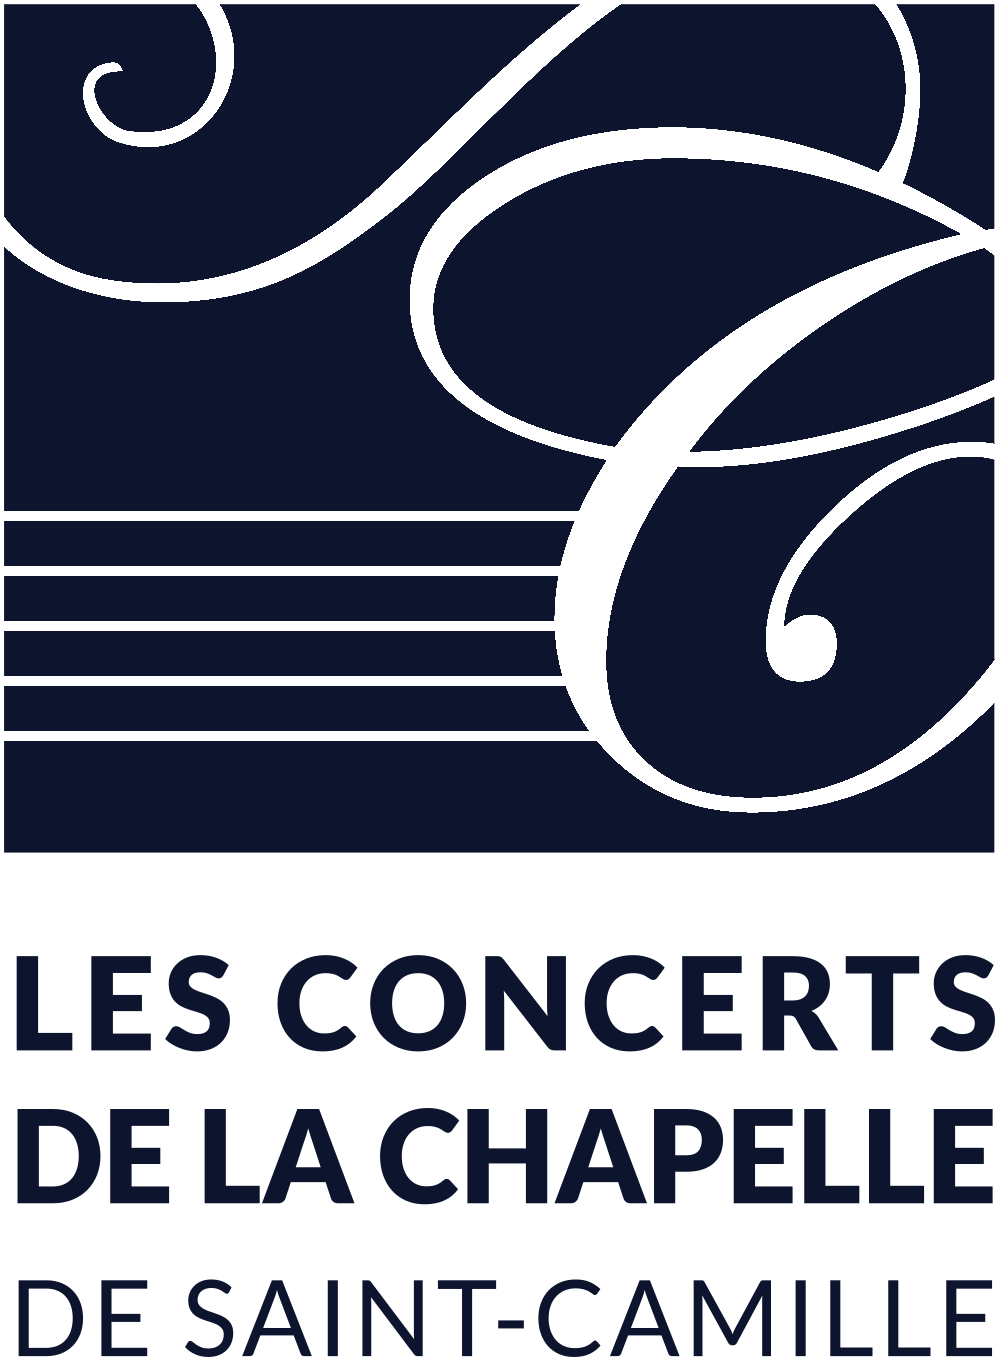 Les Concerts de la Chapelle